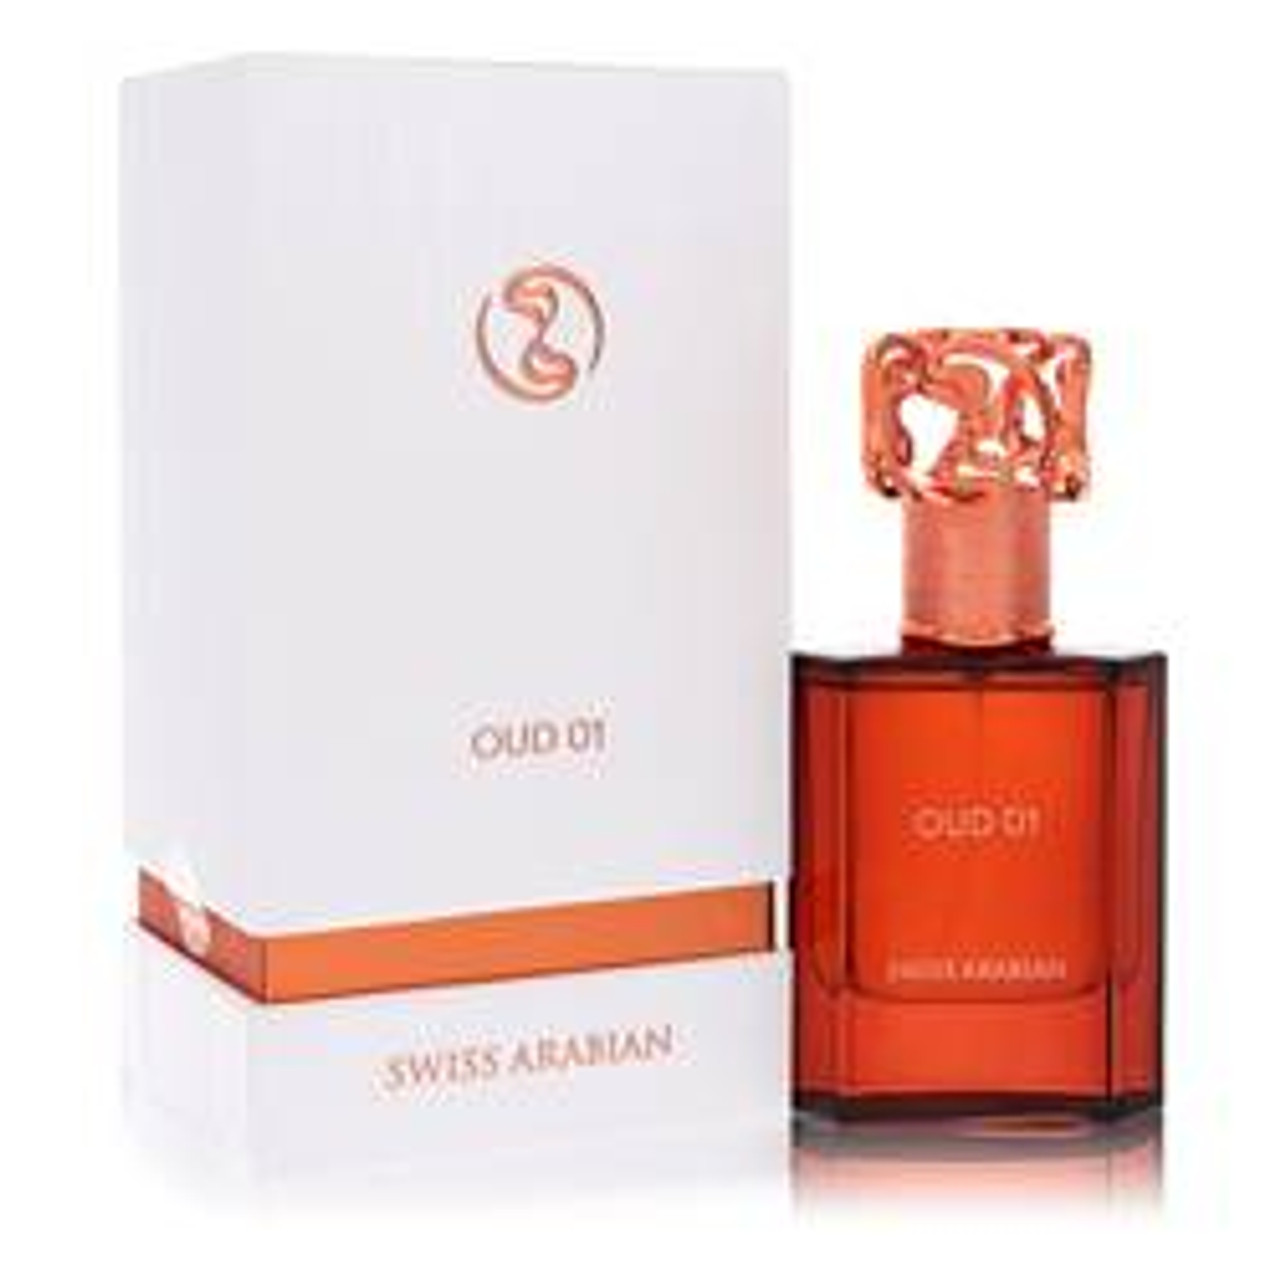 Swiss Arabian Oud 01 Cologne By Swiss Arabian Eau De Parfum Spray (Unisex) 1.7 oz for Men - *Pre-Order